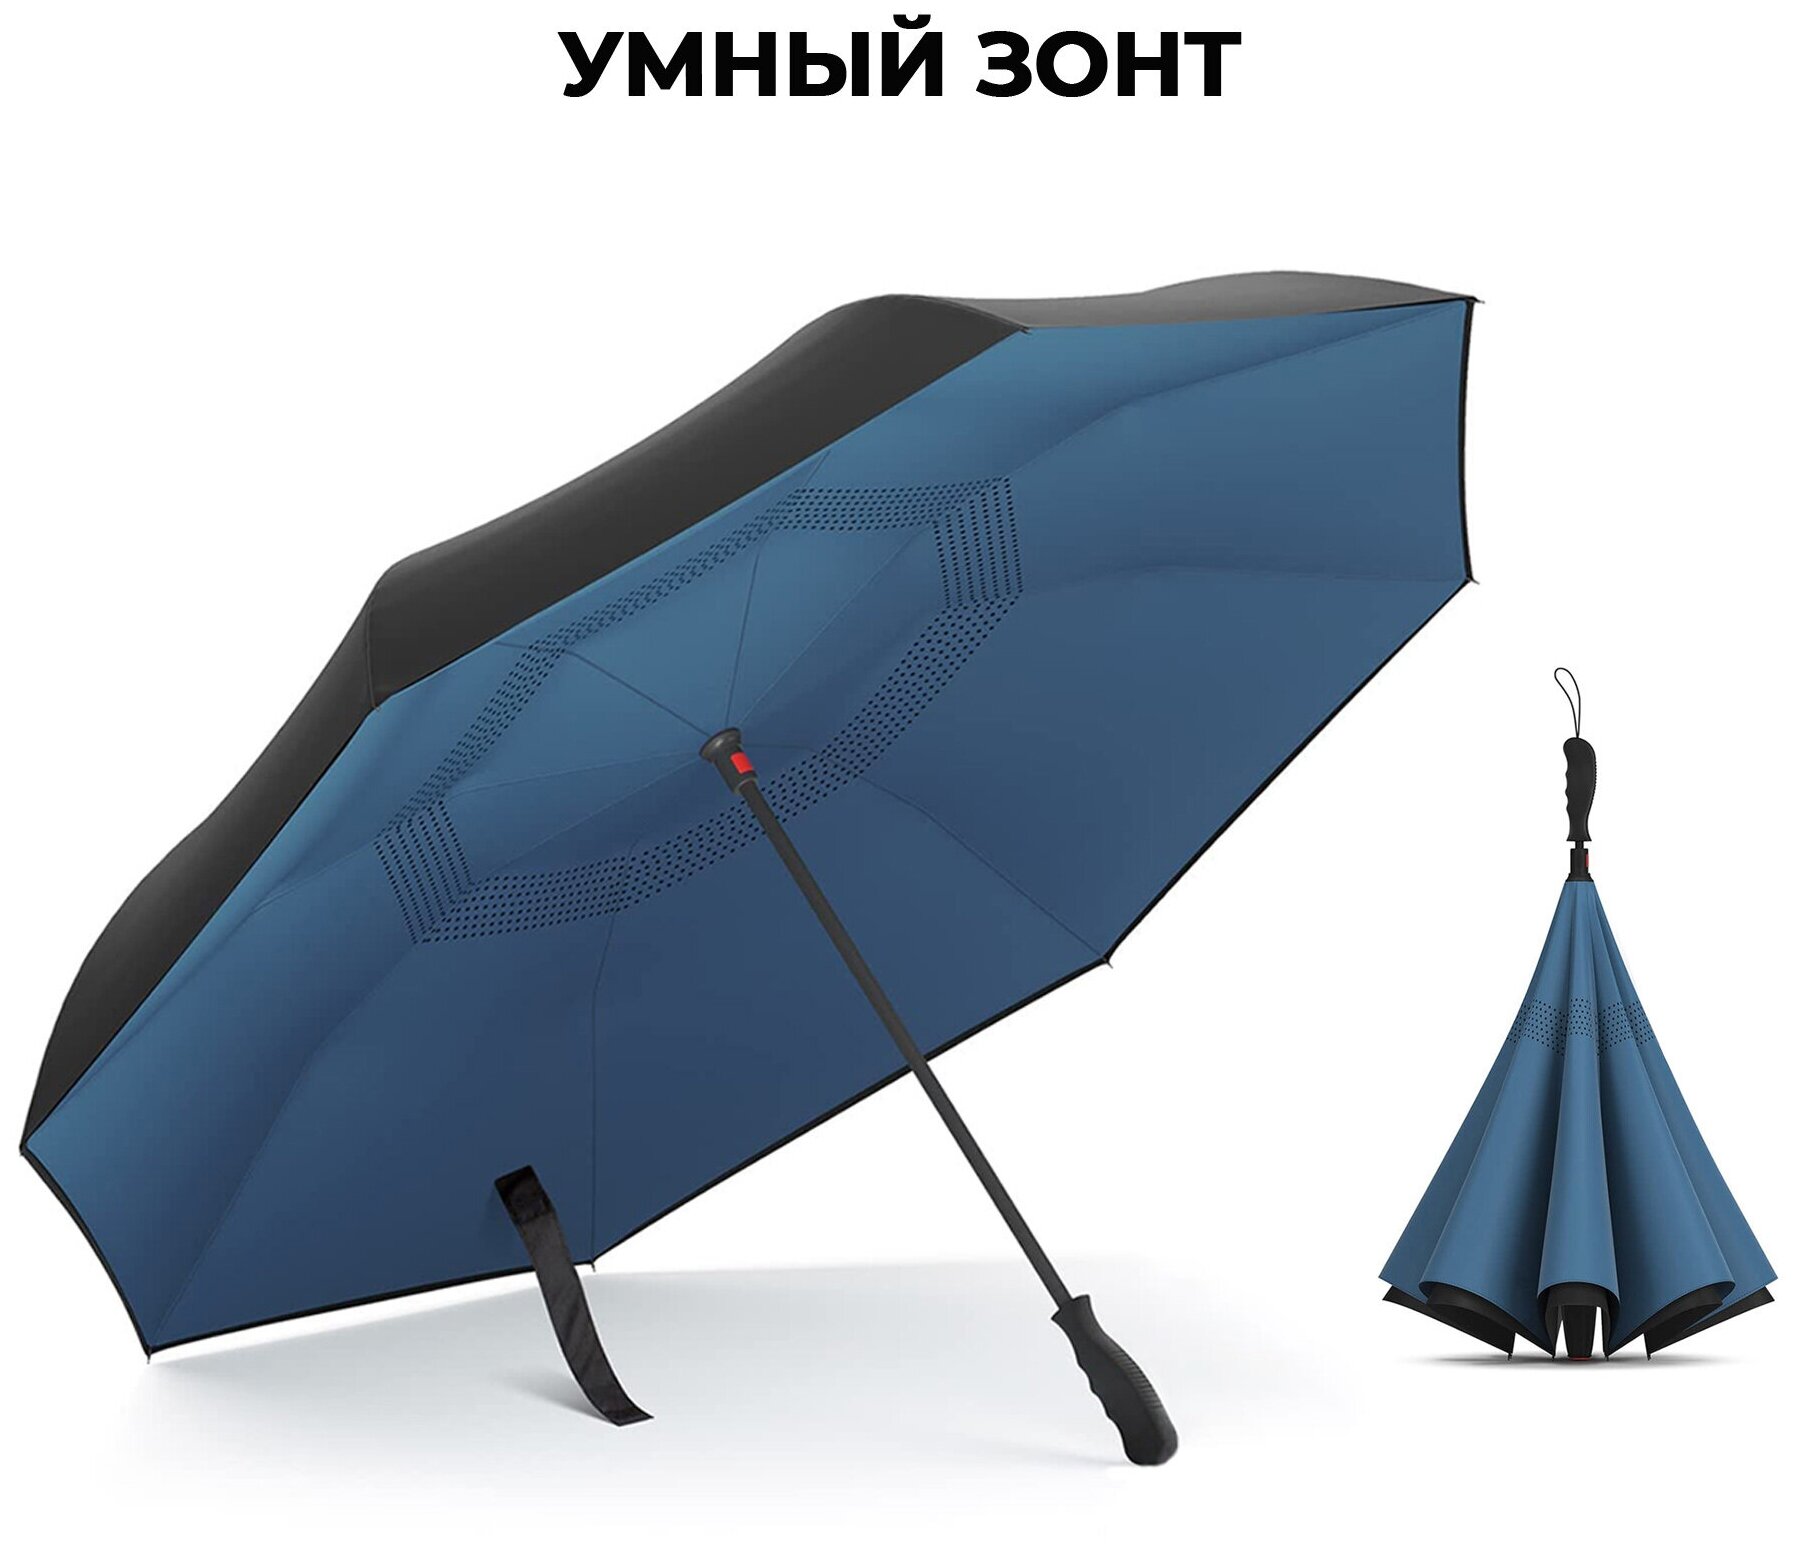 Зонт автомат двухсторонний, большой автоматический зонт-трость обратного сложения, реверсивный складной зонт-трость.